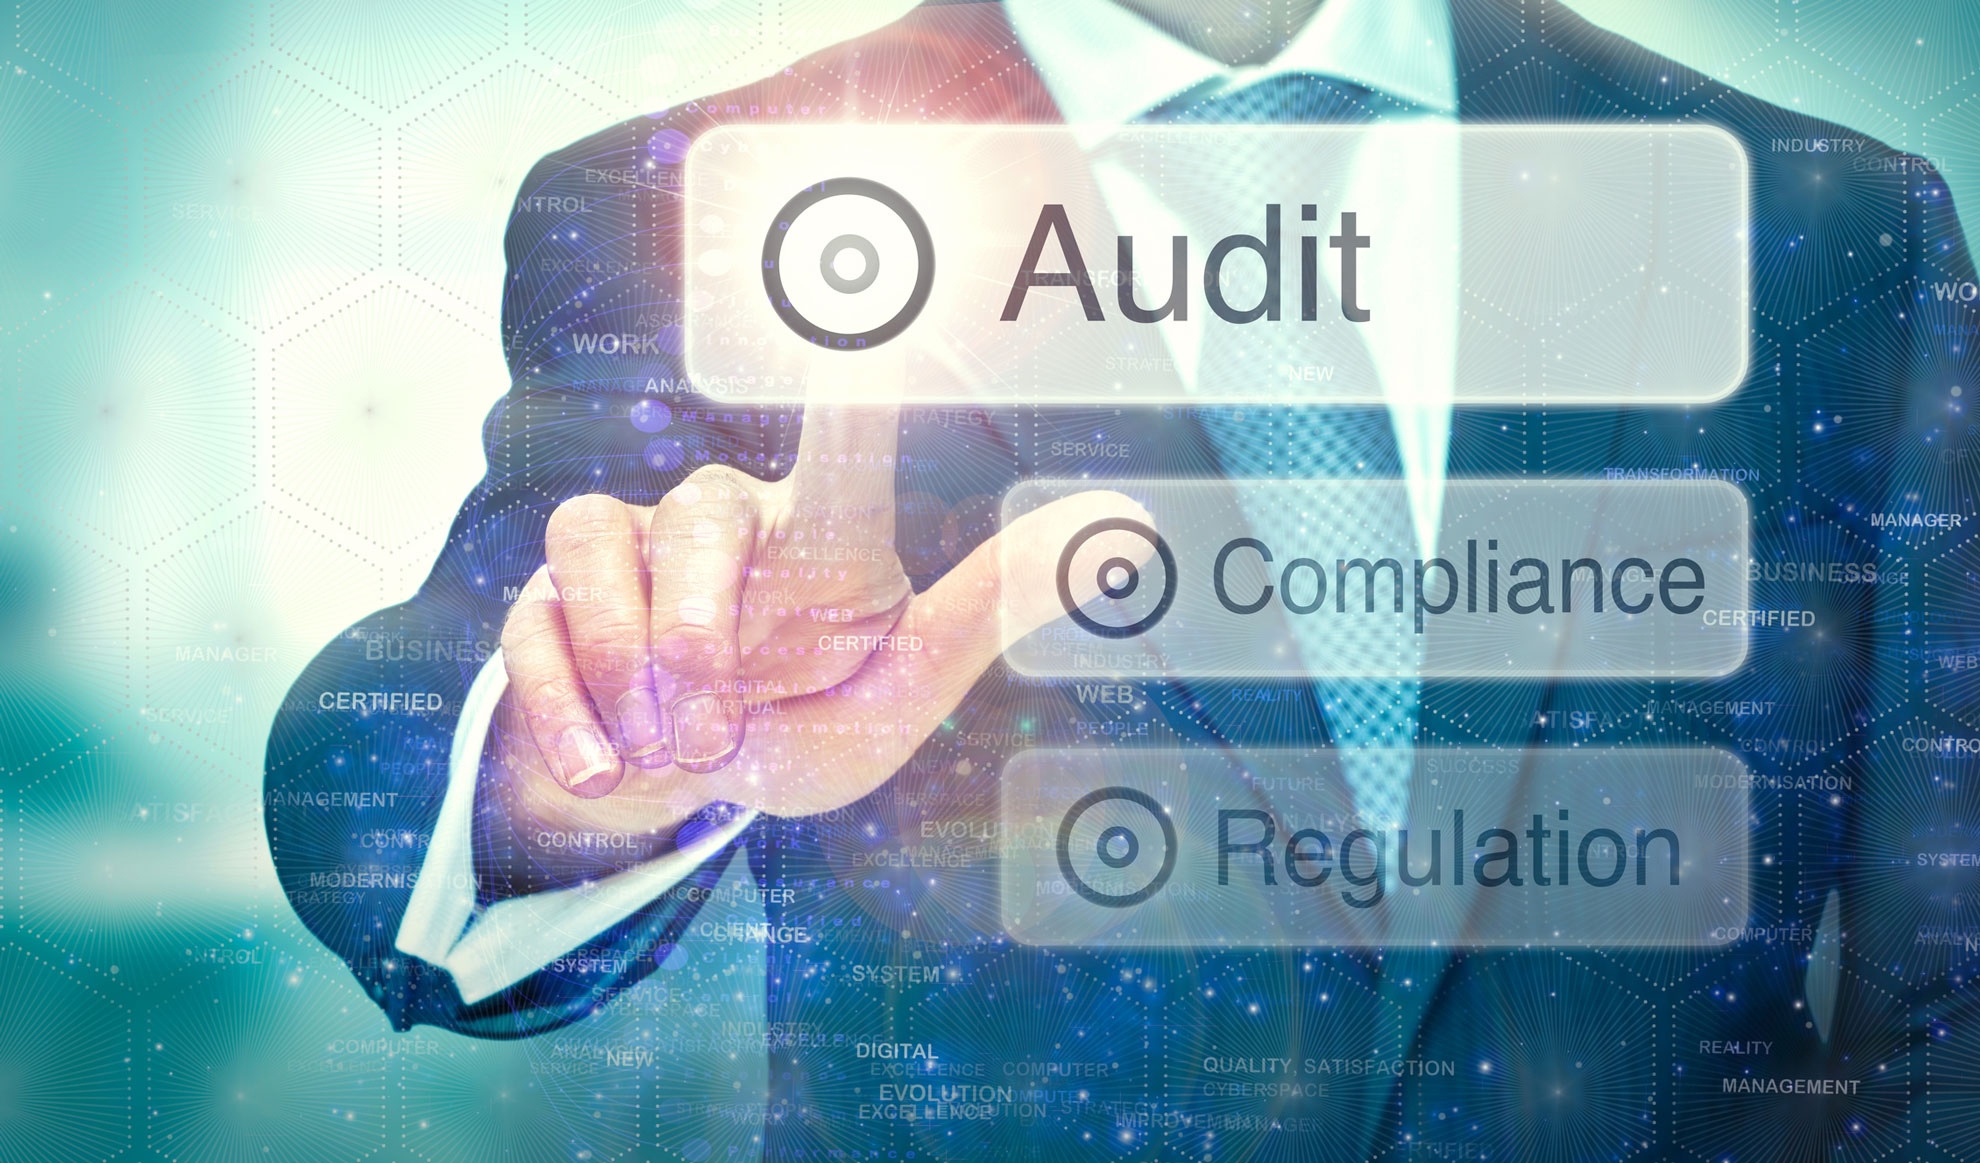 account service - audit